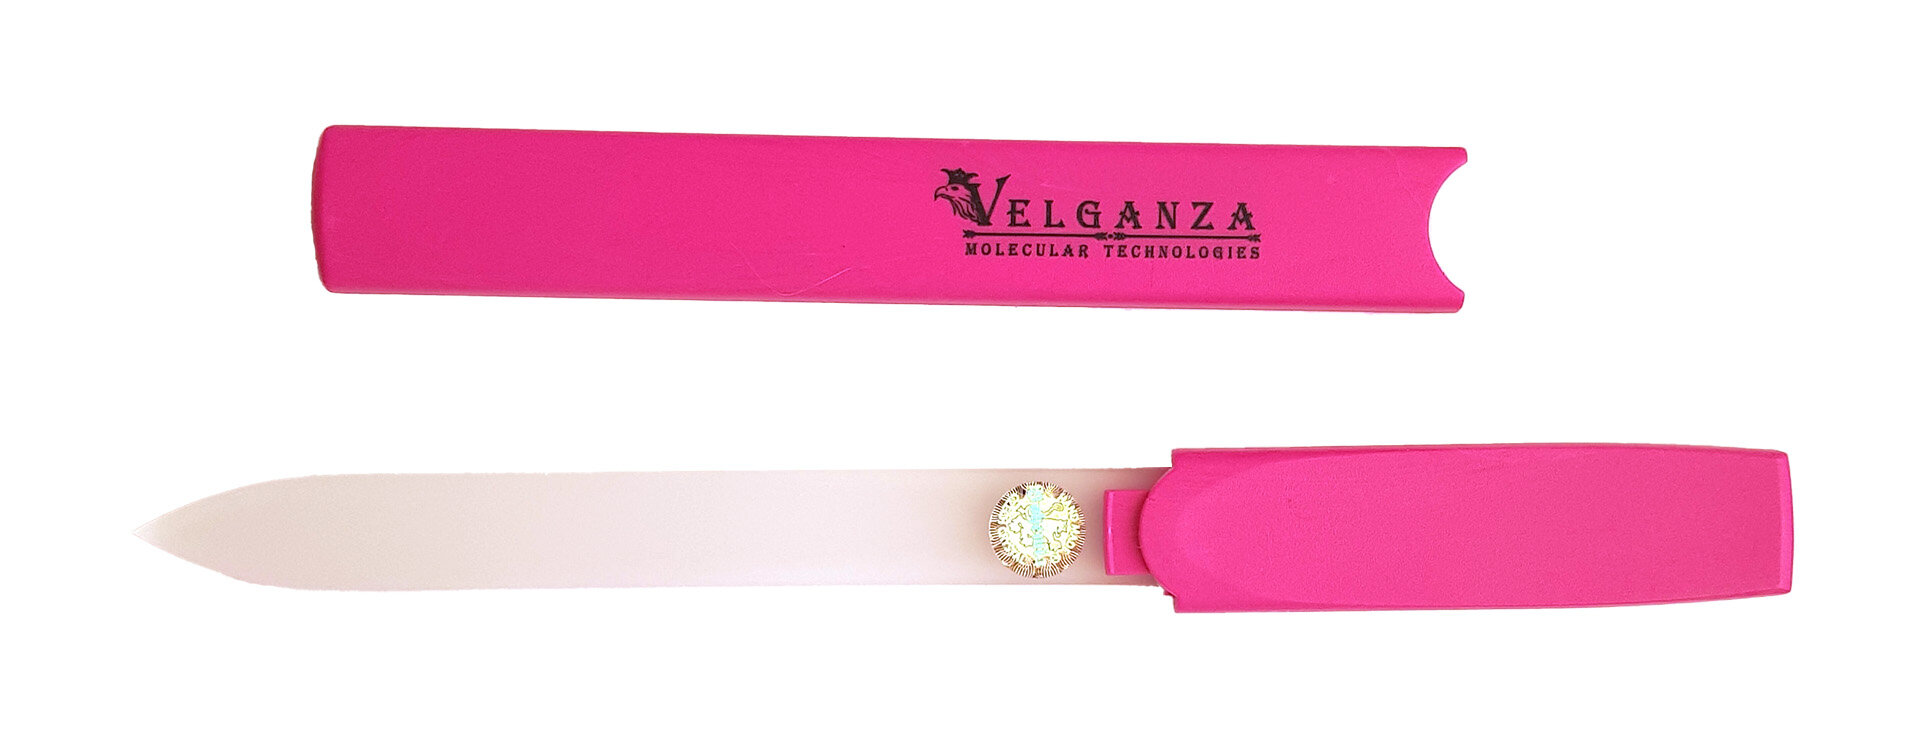 Пилка стеклянная полирующая Velganza CZ0391 с эффектом ламинирования ногтей, в чехле, 16 см, ярко-розовая